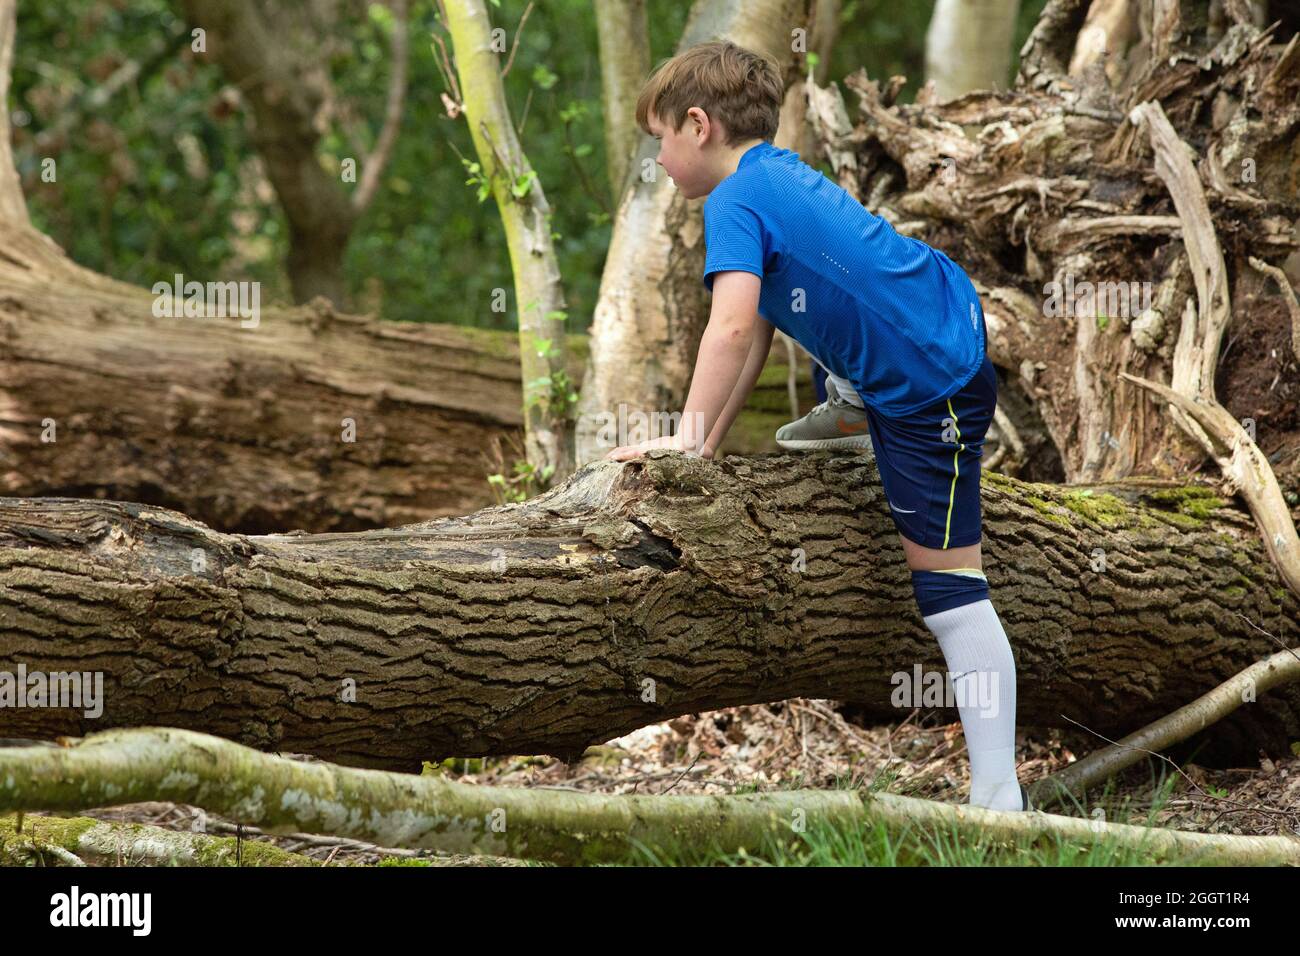 Kleiner Junge, der die Herausforderung und Erfahrung des Kletterns über natürliche Hindernisse der Natur entdeckt, in Form eines abgefallenen Baumstamms im Wald. Stockfoto